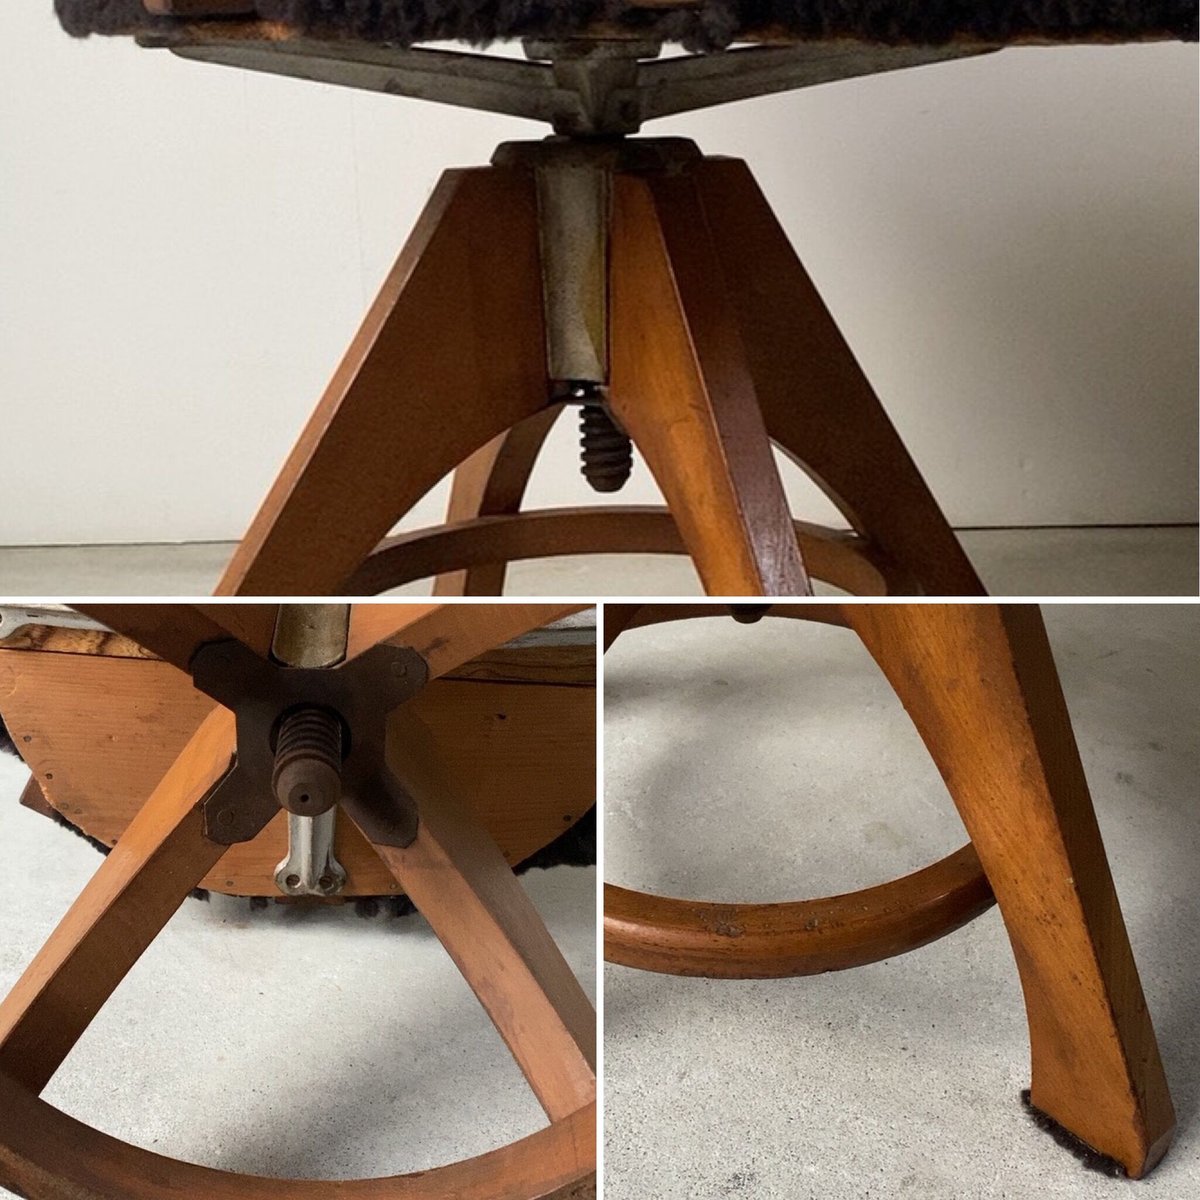 アンティーク 木製ドクターチェア 古い回転椅子 ブラック 木製無垢材